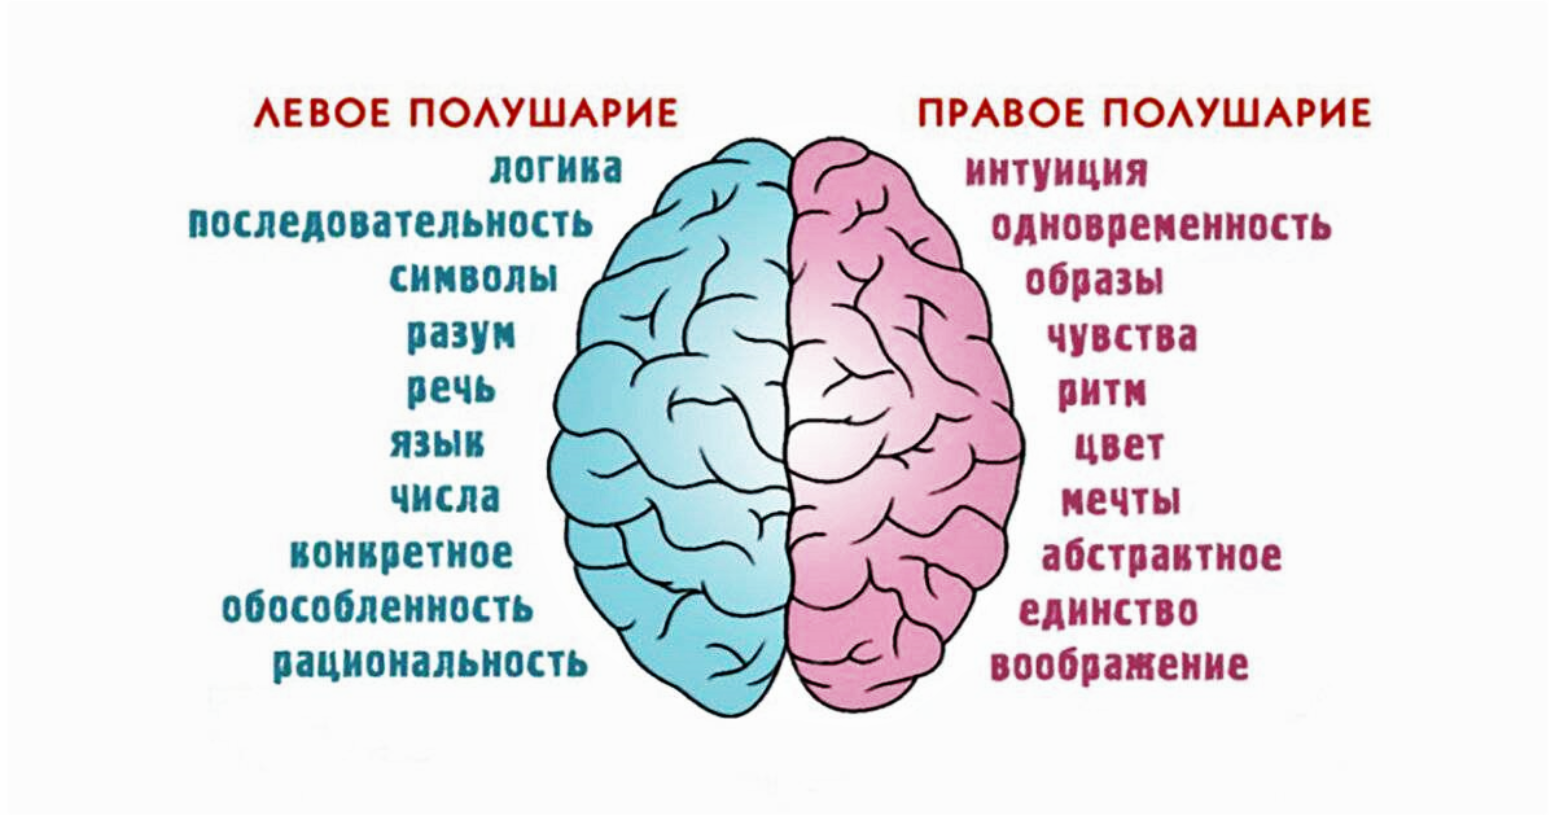 Как функционирует мозг. Полушария мозга девое т правое. За что отвечает правое полушарие. За что отвечают полушария головного мозга человека левое и правое. За какие процессы головного мозга отвечает правое полушарие.